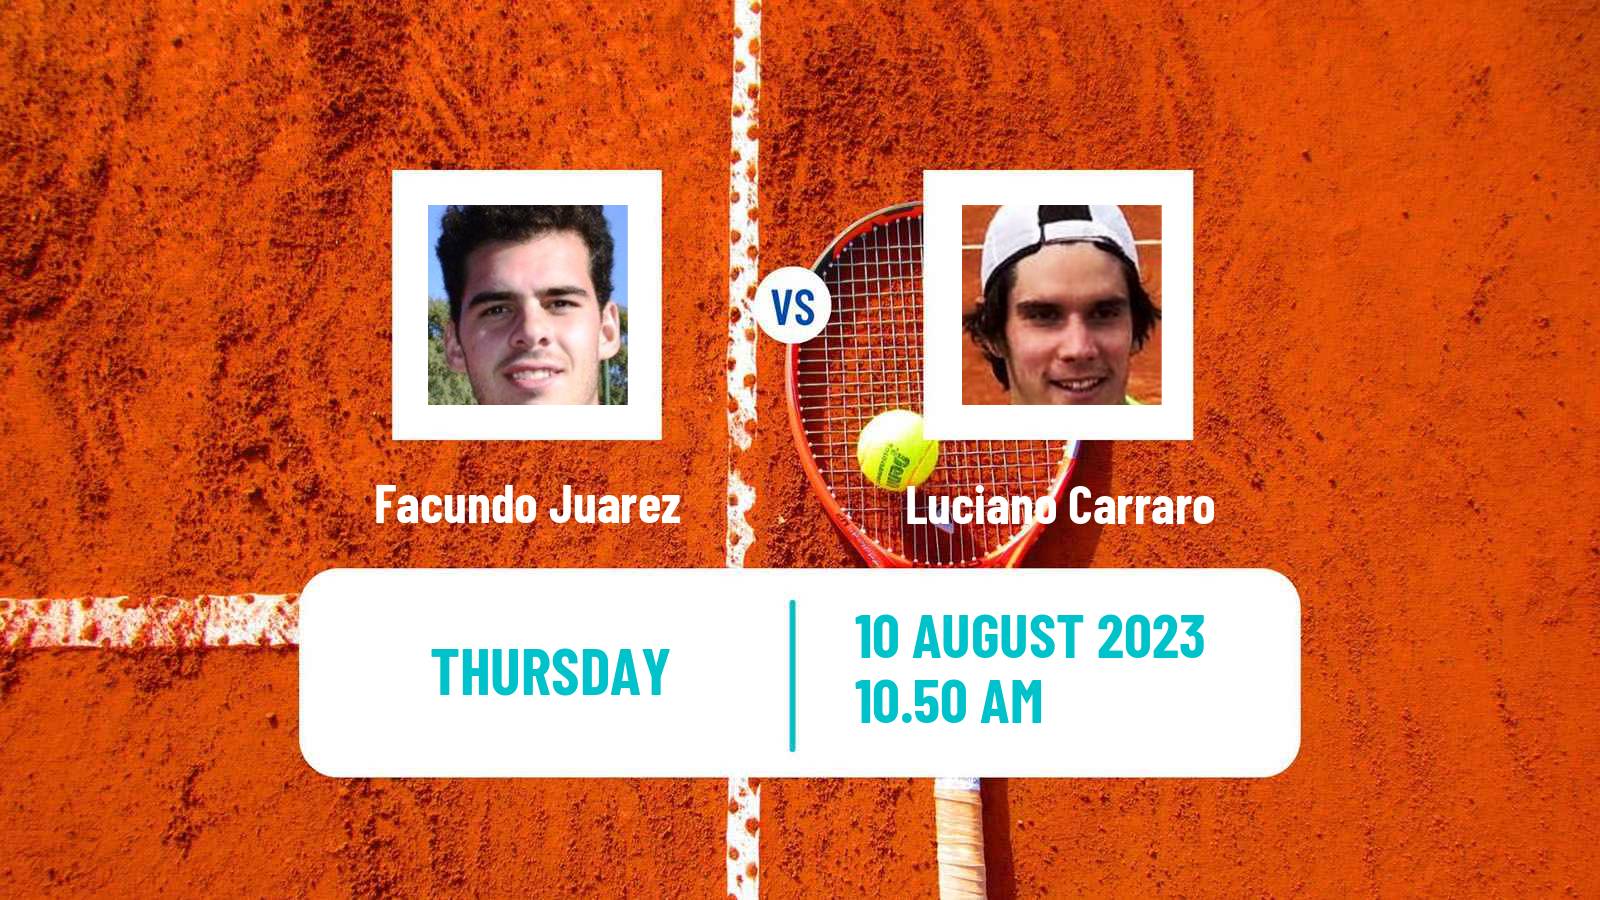 Tennis ITF M15 Pescara Men Facundo Juarez - Luciano Carraro